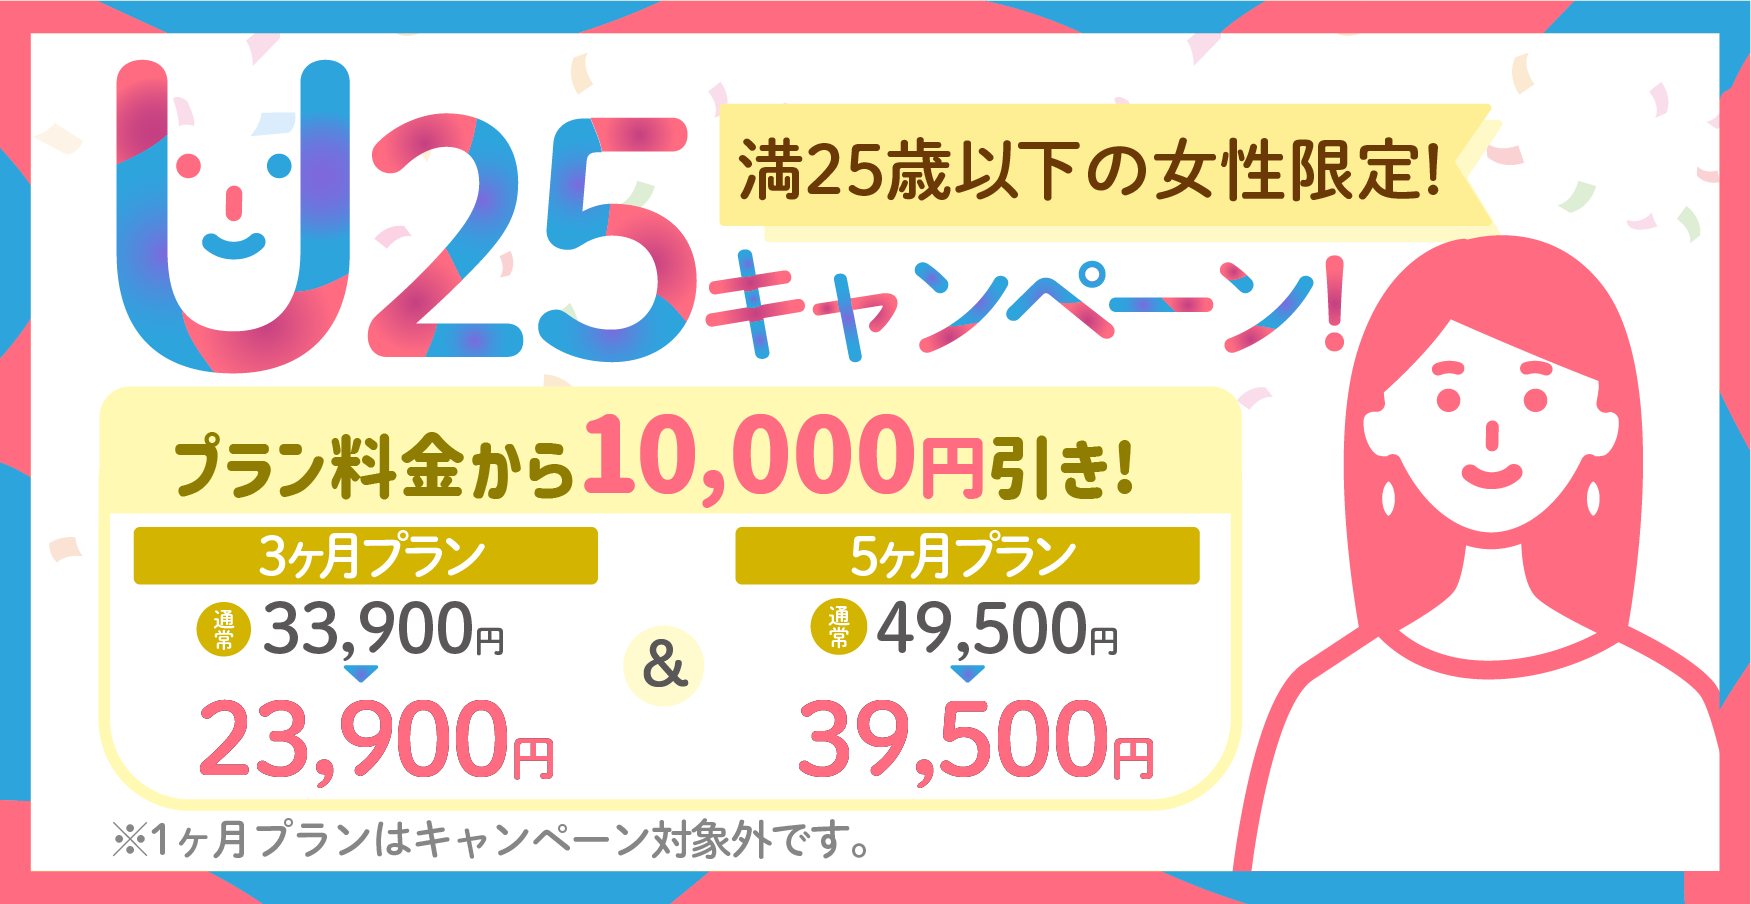 満25歳未満の女性限定キャンペーン、プラン料金から1万円引き